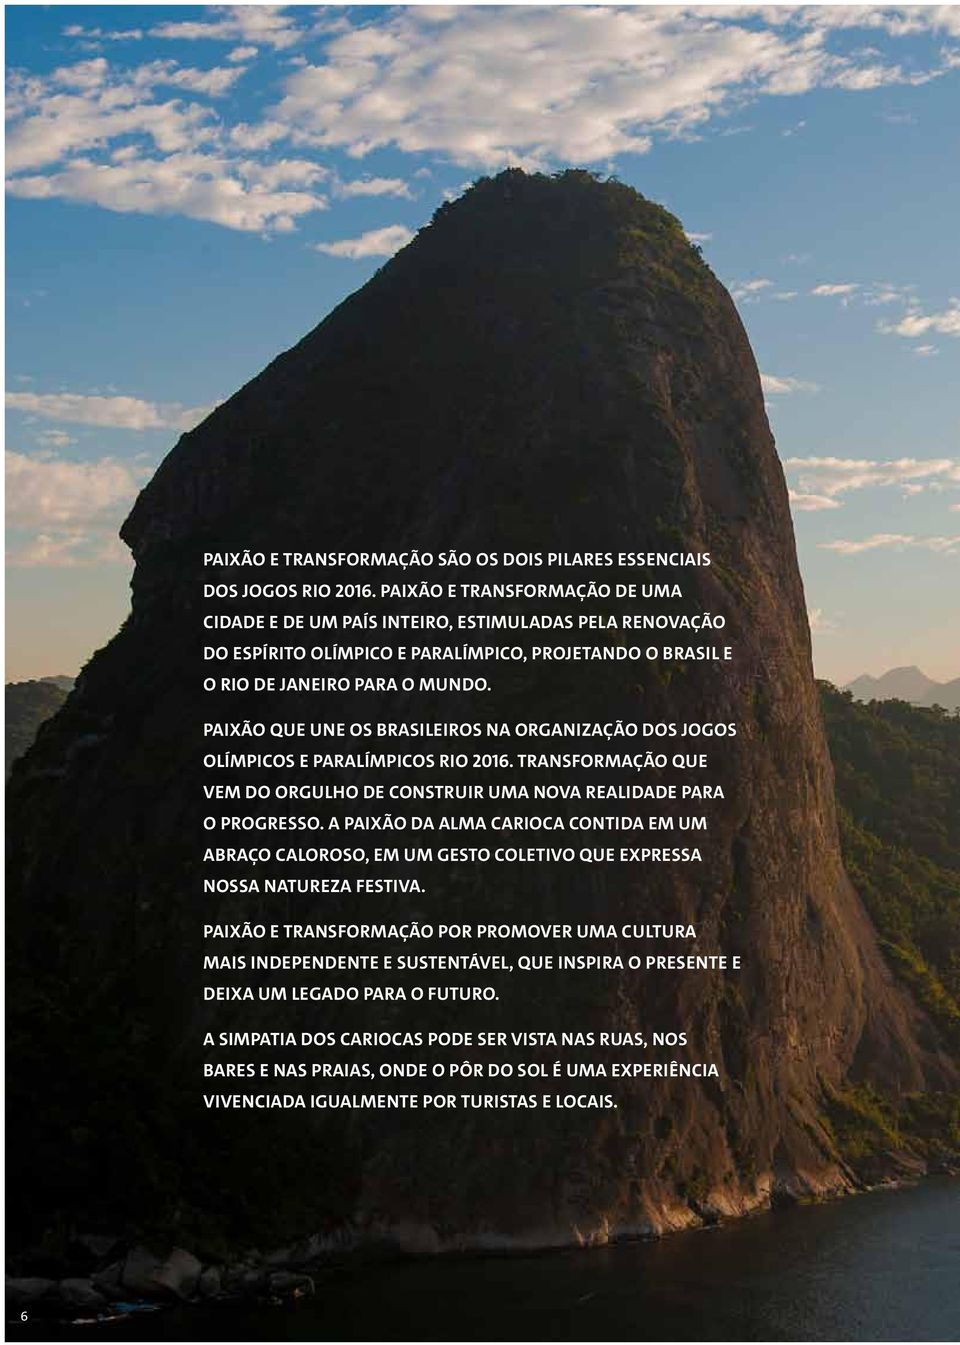 Paixão que une os brasileiros na organização dos Jogos Olímpicos e Paralímpicos Rio 2016. Transformação que vem do orgulho de construir uma nova realidade para o progresso.